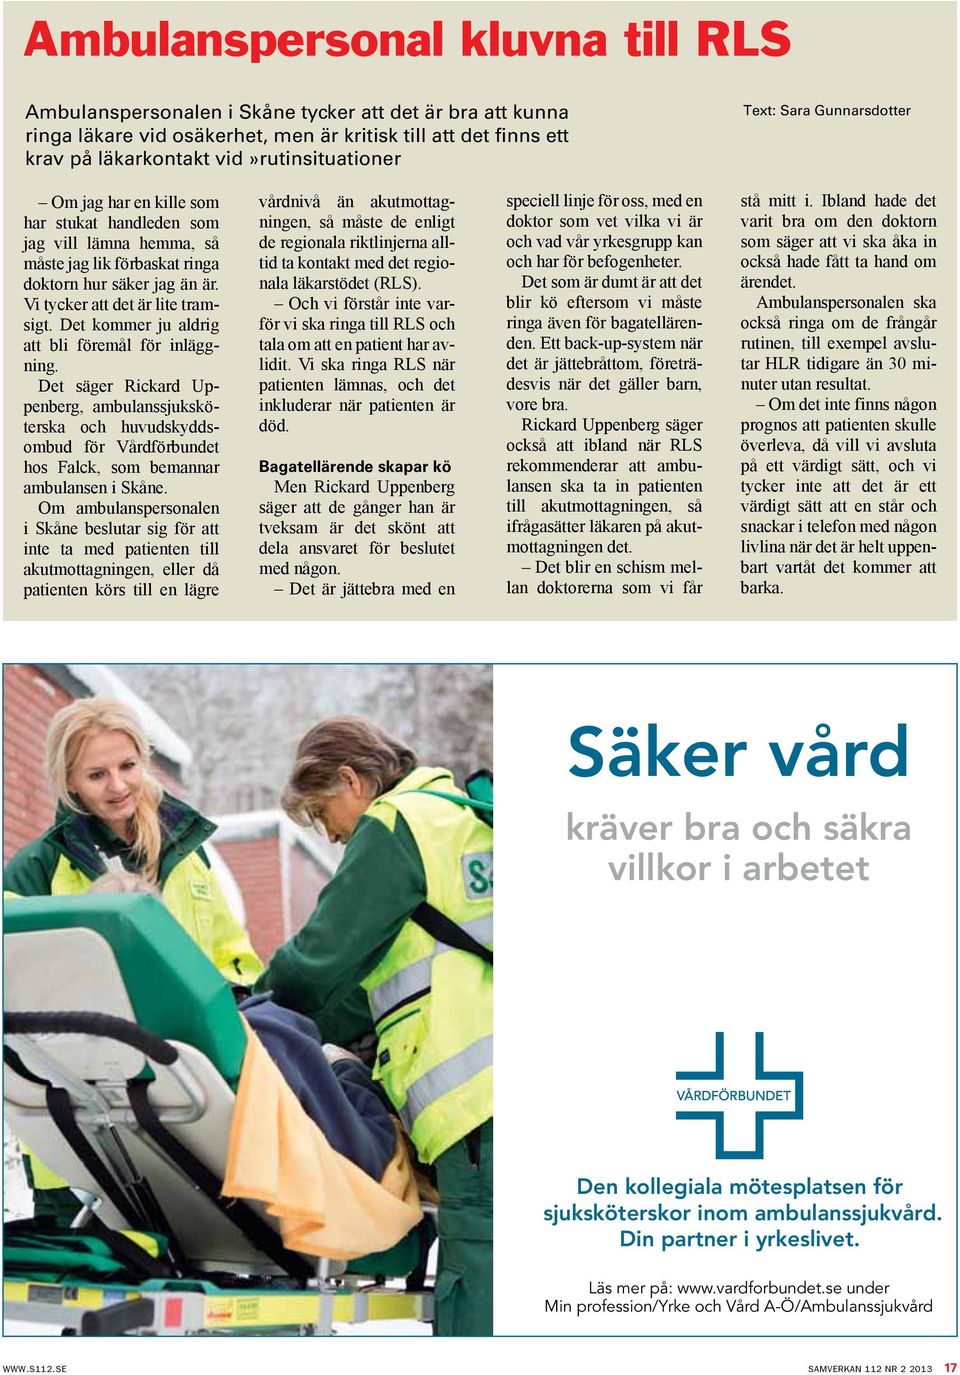 Det kommer ju aldrig att bli föremål för inläggning. Det säger Rickard Uppenberg, ambulanssjuksköterska och huvudskyddsombud för Vårdförbundet hos Falck, som bemannar ambulansen i Skåne.